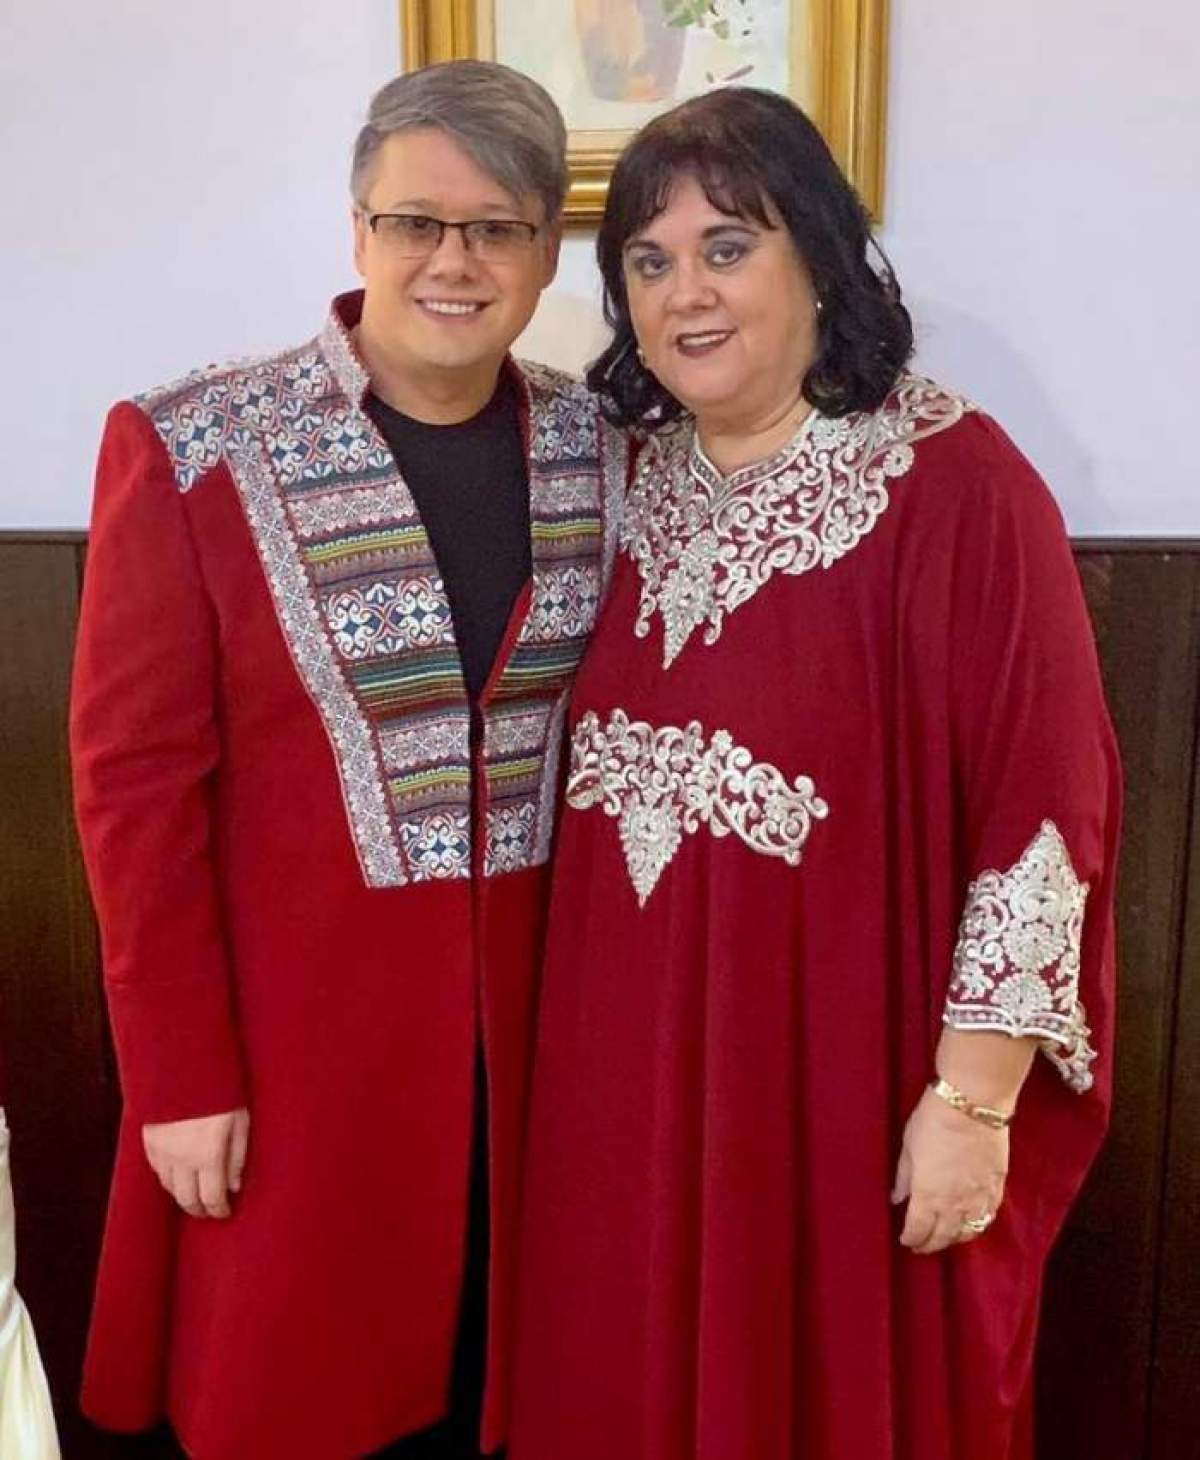 Fuego și Eugenia Surugiu s-au fotografiat împreună, îmbrăcați la fel